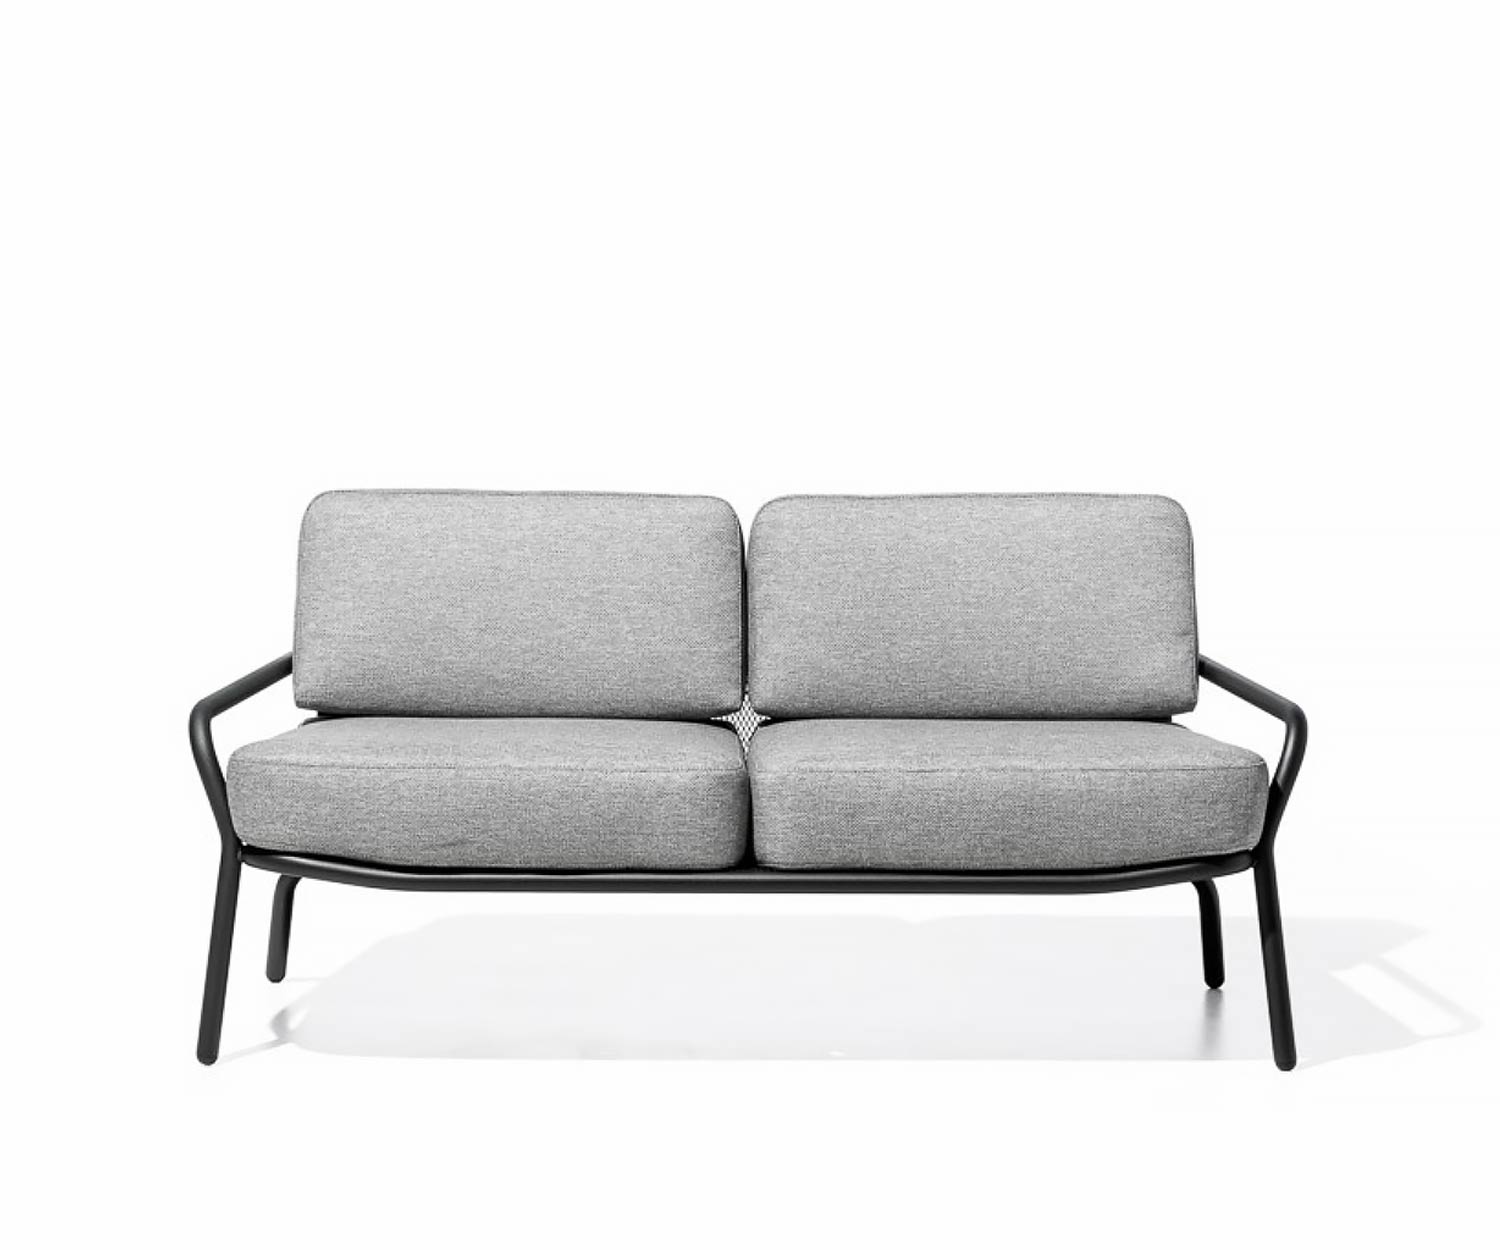 Exklusives Todus Starling Design Loungesofa mit weißem Stoffbezug als 2 Sitzer